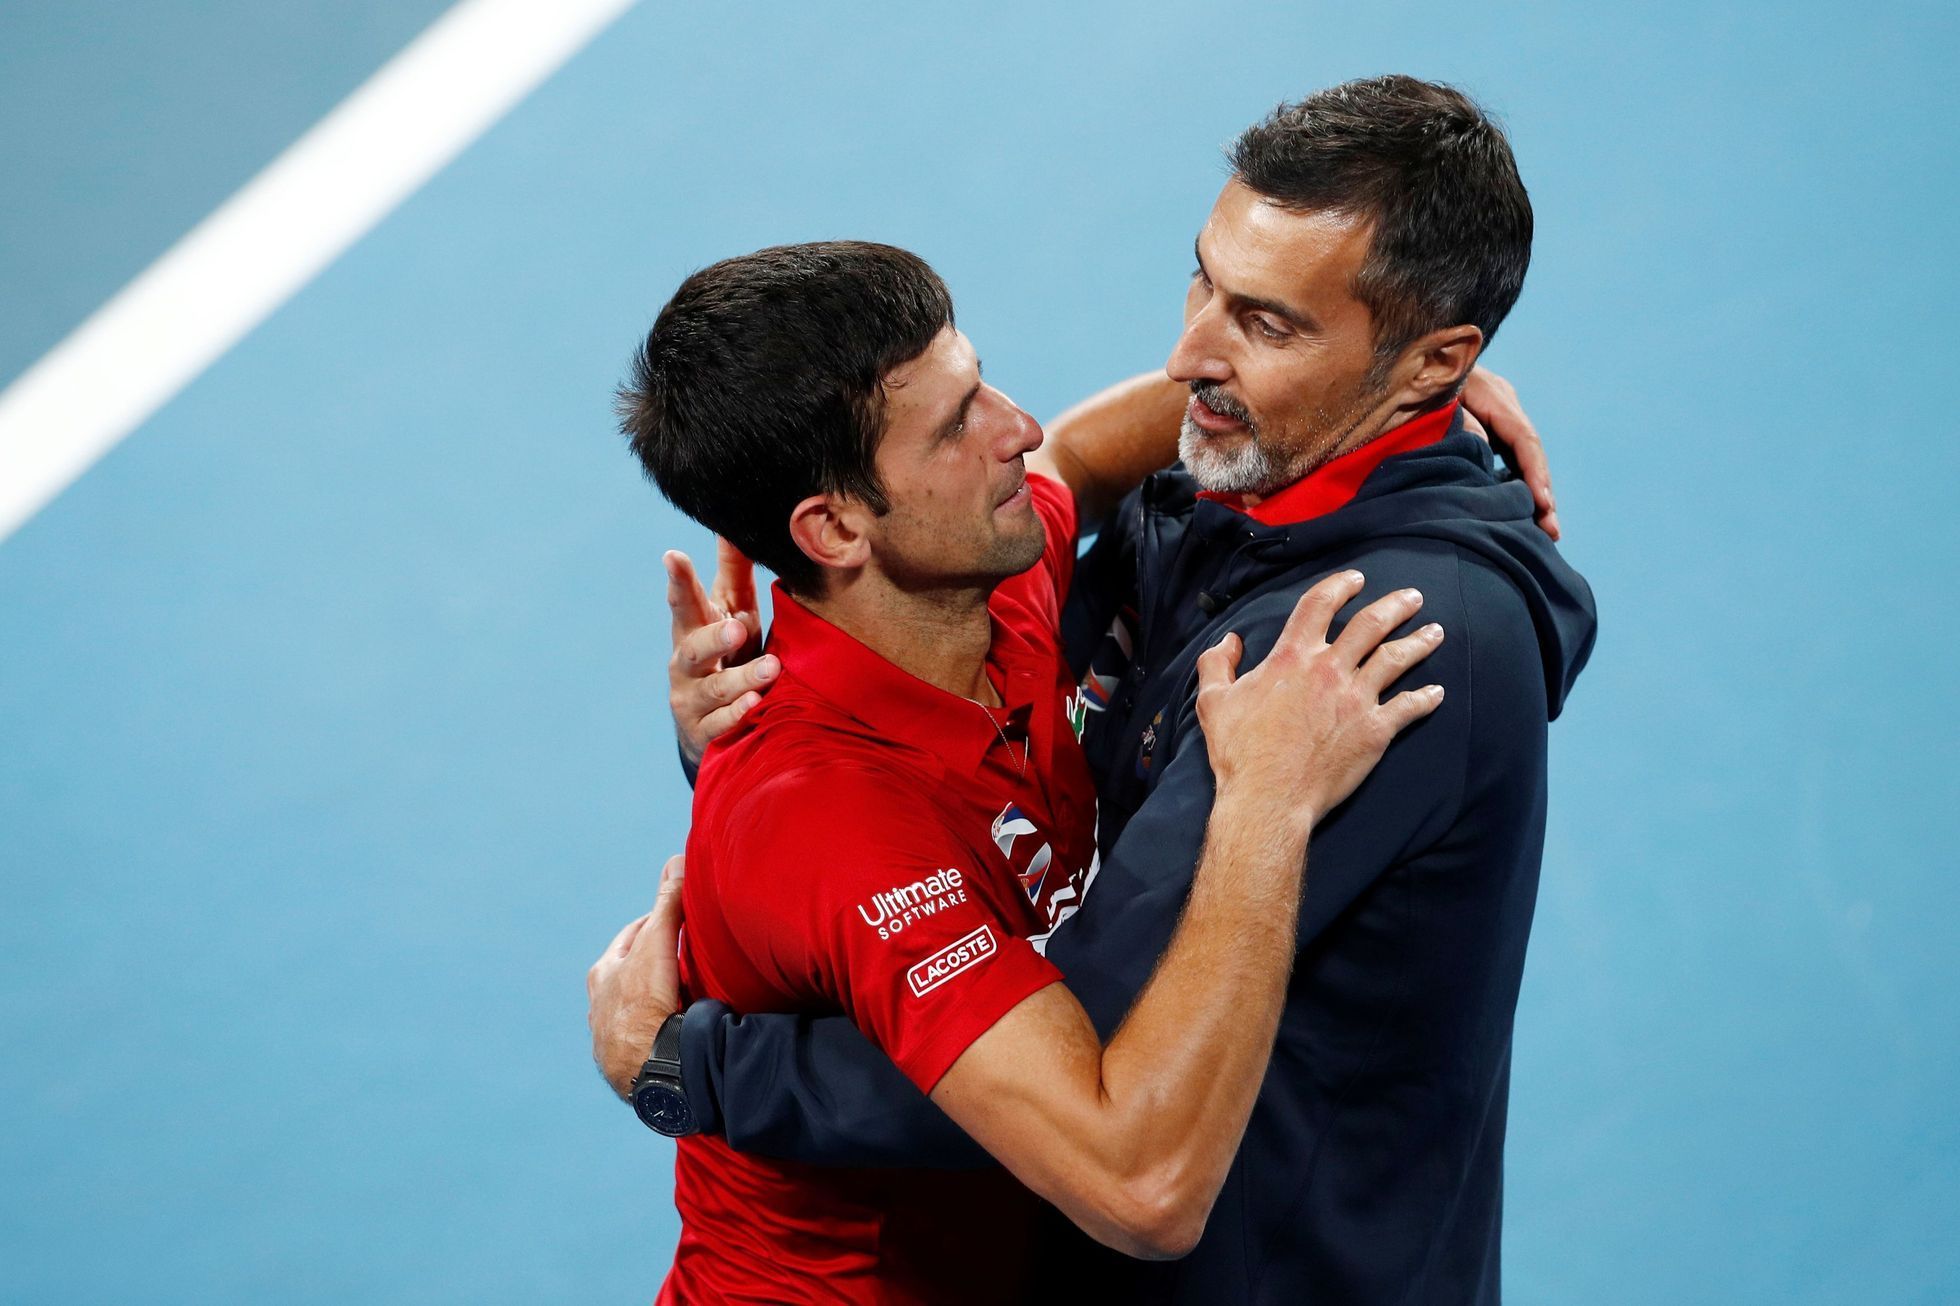 Srbsko - Španělsko, finále ATP Cupu 2020, Novak Djokovič